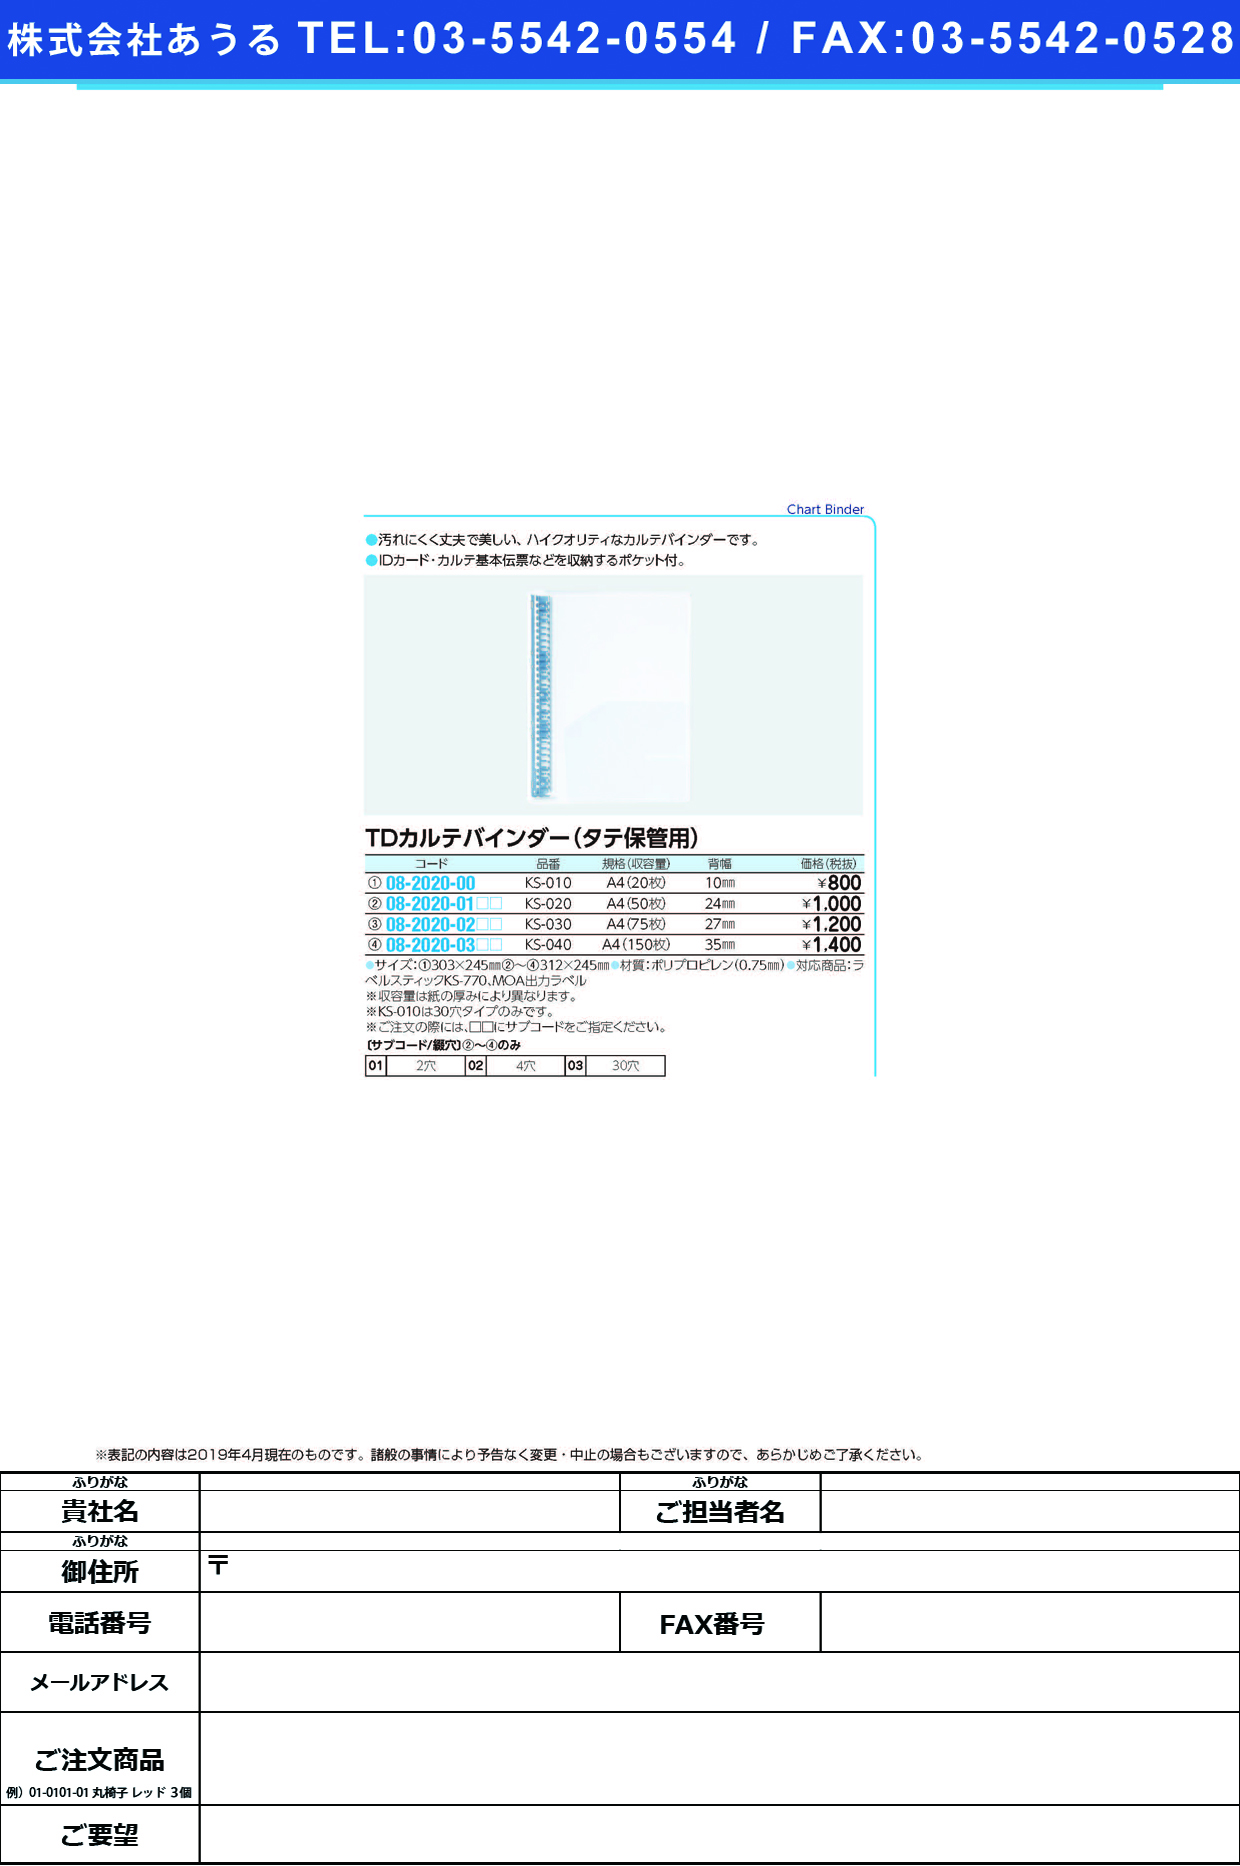 (08-2020-03)ＴＤカルテバインダー（Ａ４用） KS-040(ﾄｳﾒｲ) TDｶﾙﾃﾊﾞｲﾝﾀﾞｰ ４穴(ケルン)【1冊単位】【2019年カタログ商品】